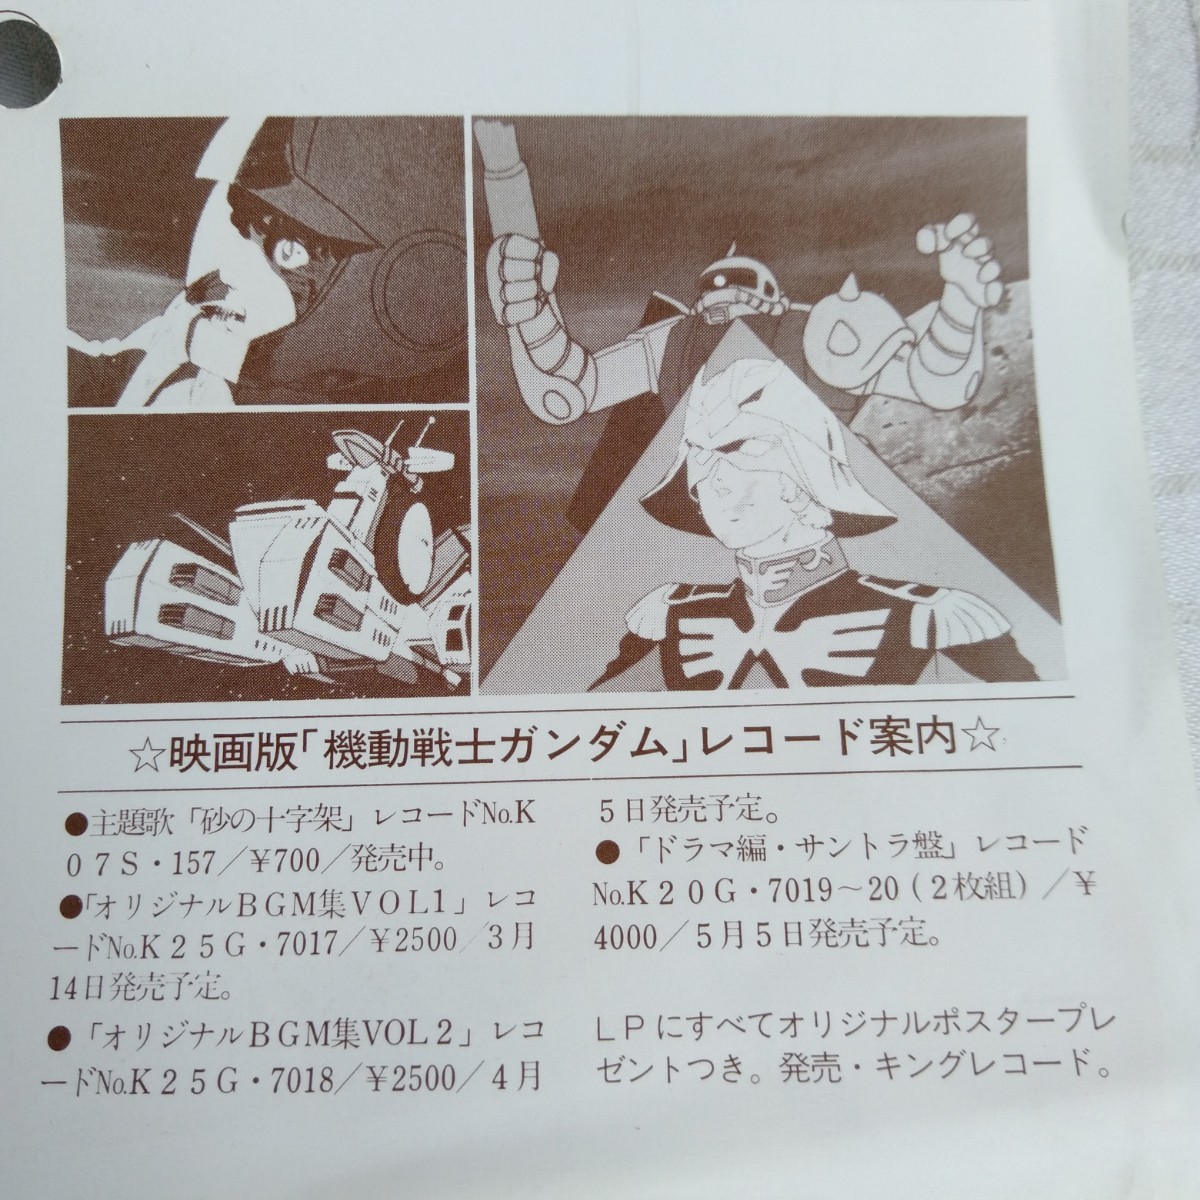 ya287 MOBILE SUIT GUNDAM SPECIAL SOUND EFFECT DISK Mobile Suit Gundam эффект звук сборник запись LP EP какой листов тоже единая стоимость доставки 1,000 иен воспроизведение не проверка 